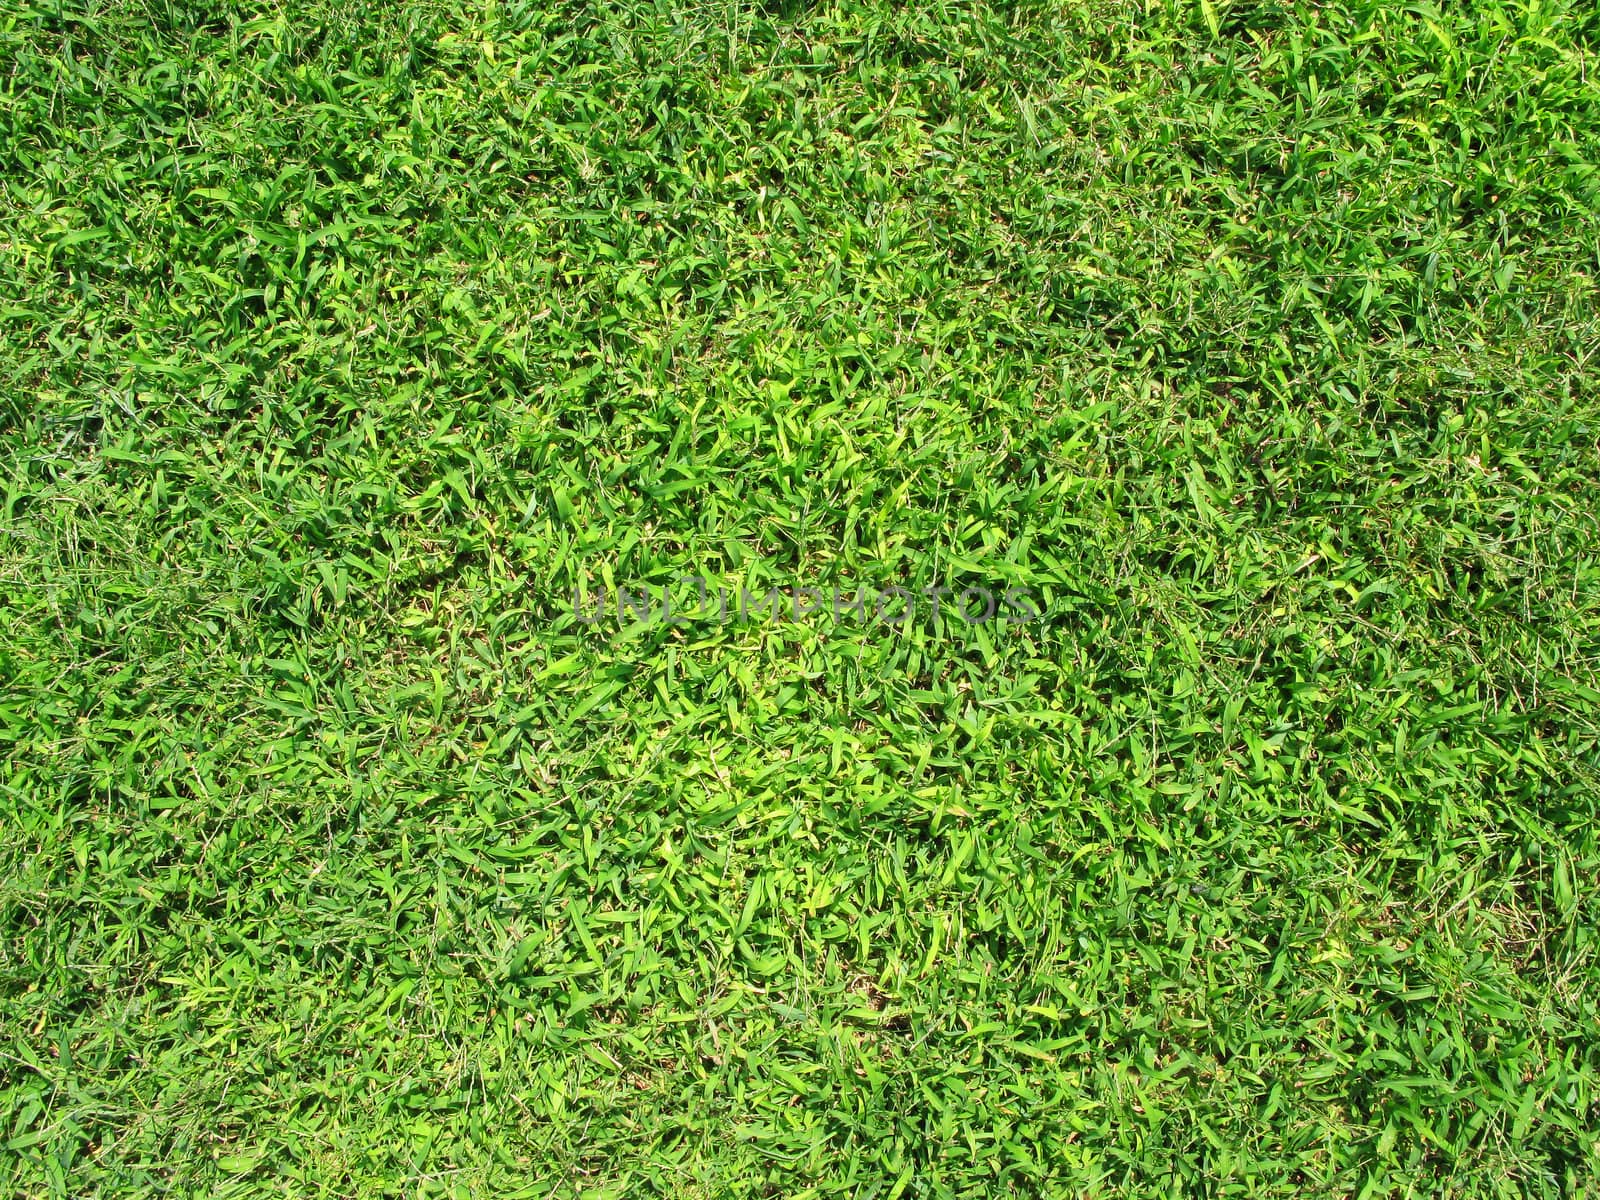 Grass texture 1 by enderbirer